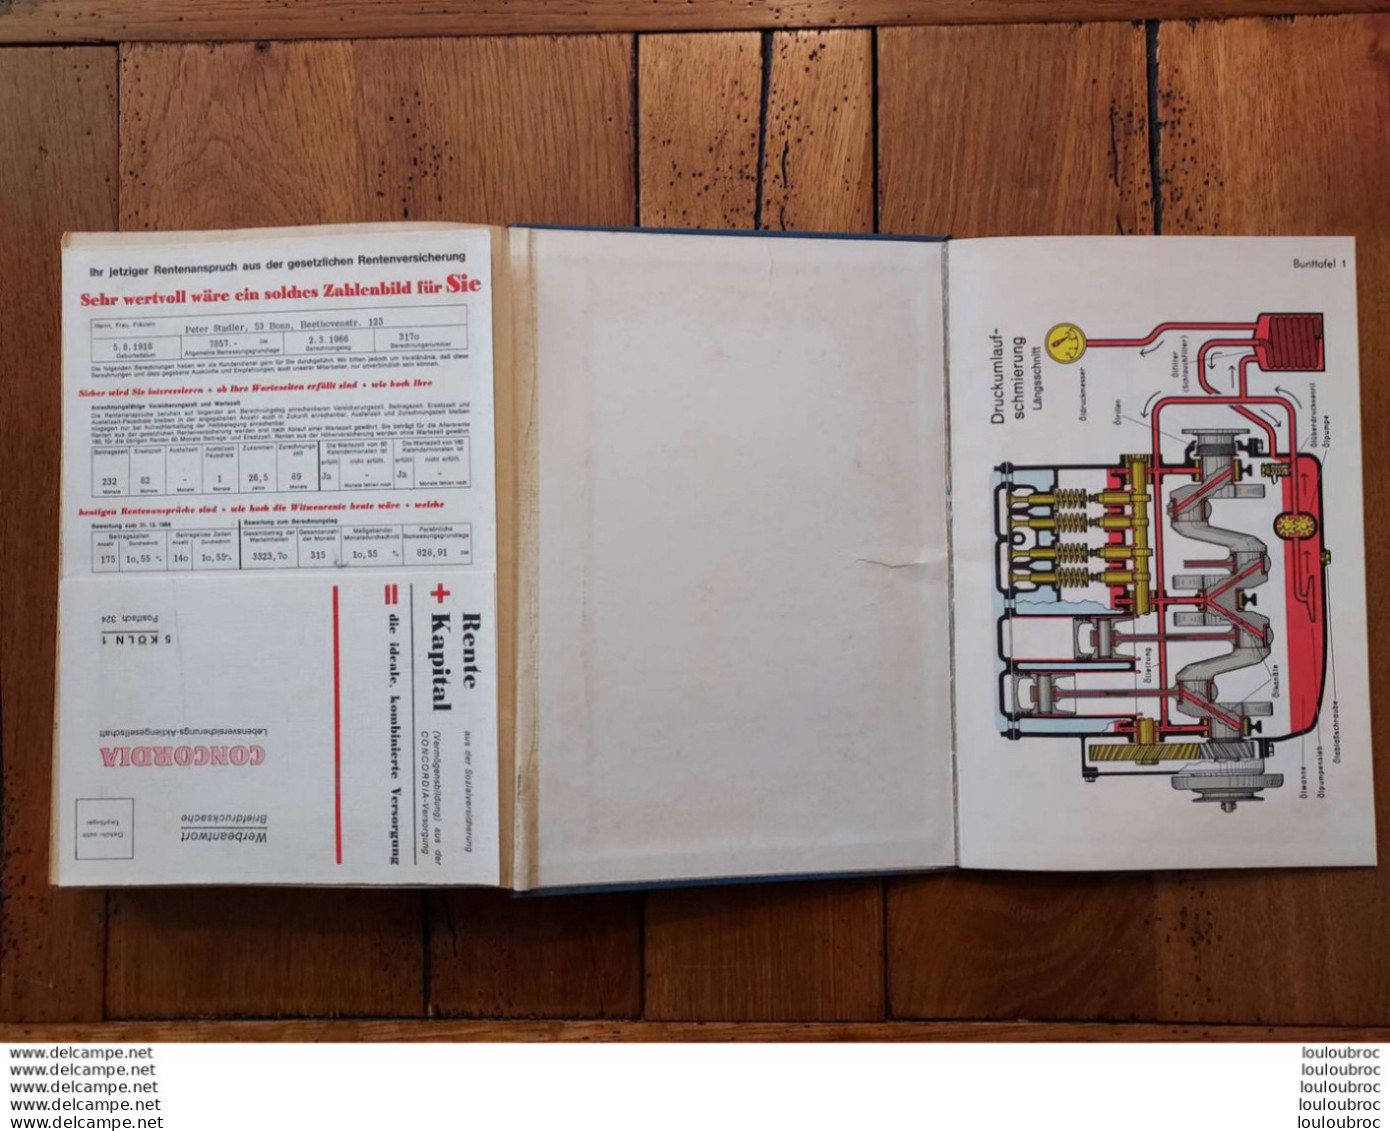 KRAFTFAHRTECHNISCHER LEITFADEN AIDE CONDUITE AUTOMOBILE 1957 ECRIT EN ALLEMAND 456 PAGES - Coches